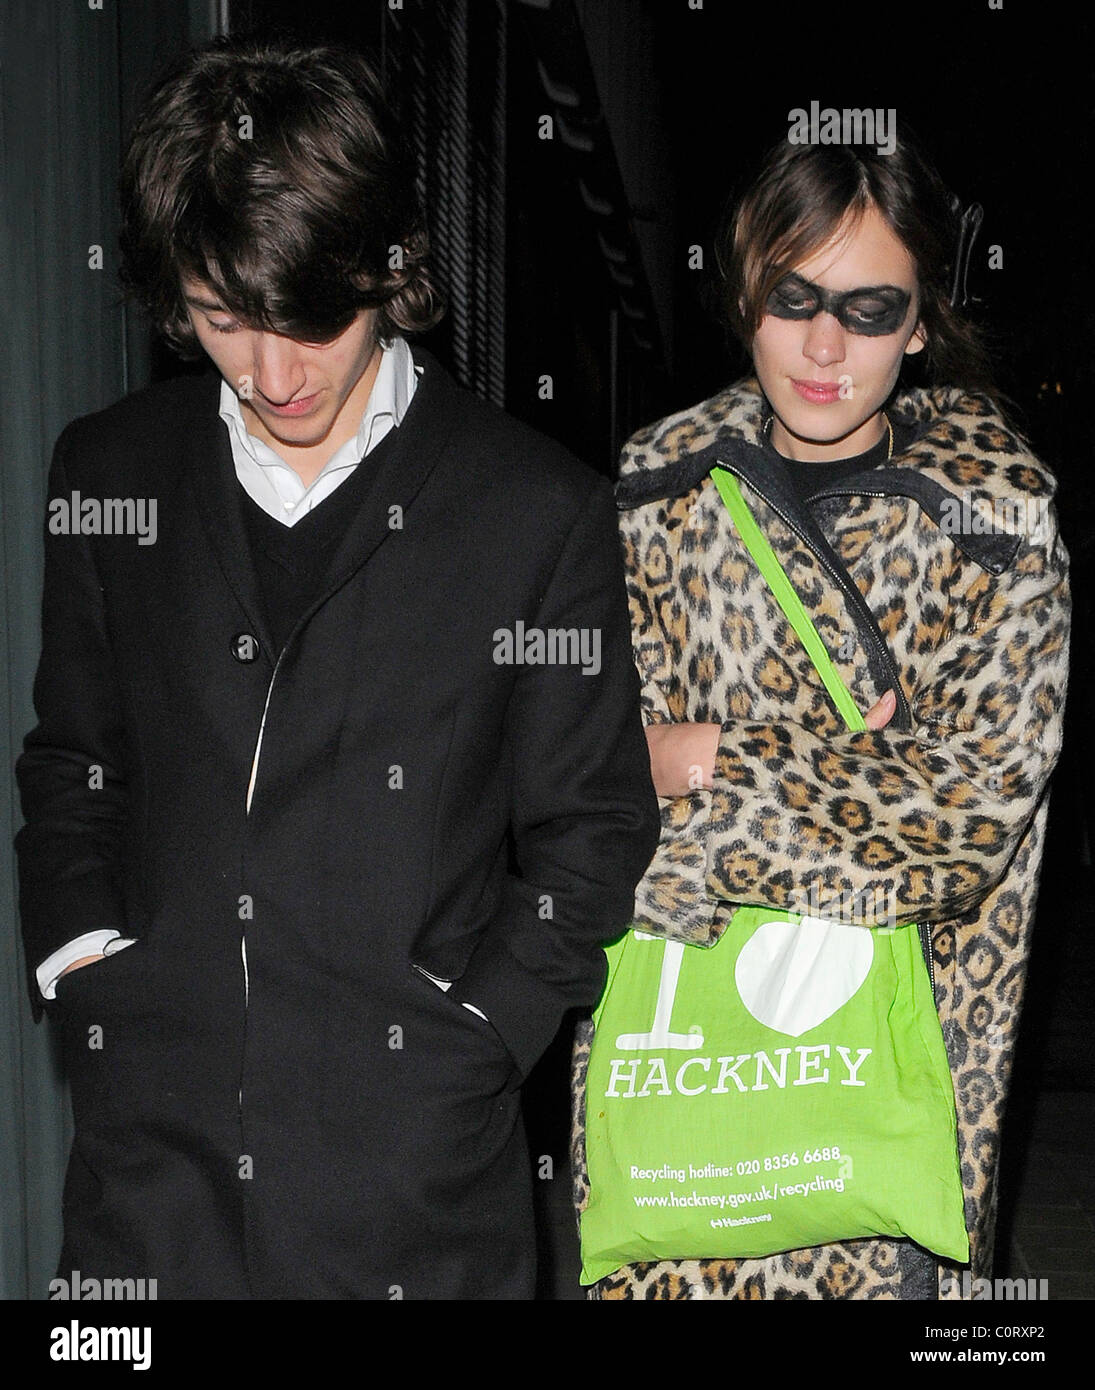 Alex Turner von den Arctic Monkeys und seine Freundin Alexa Chung verlassen  Bungalow 8 Nachtclub an 03:30 in London, England Stockfotografie - Alamy